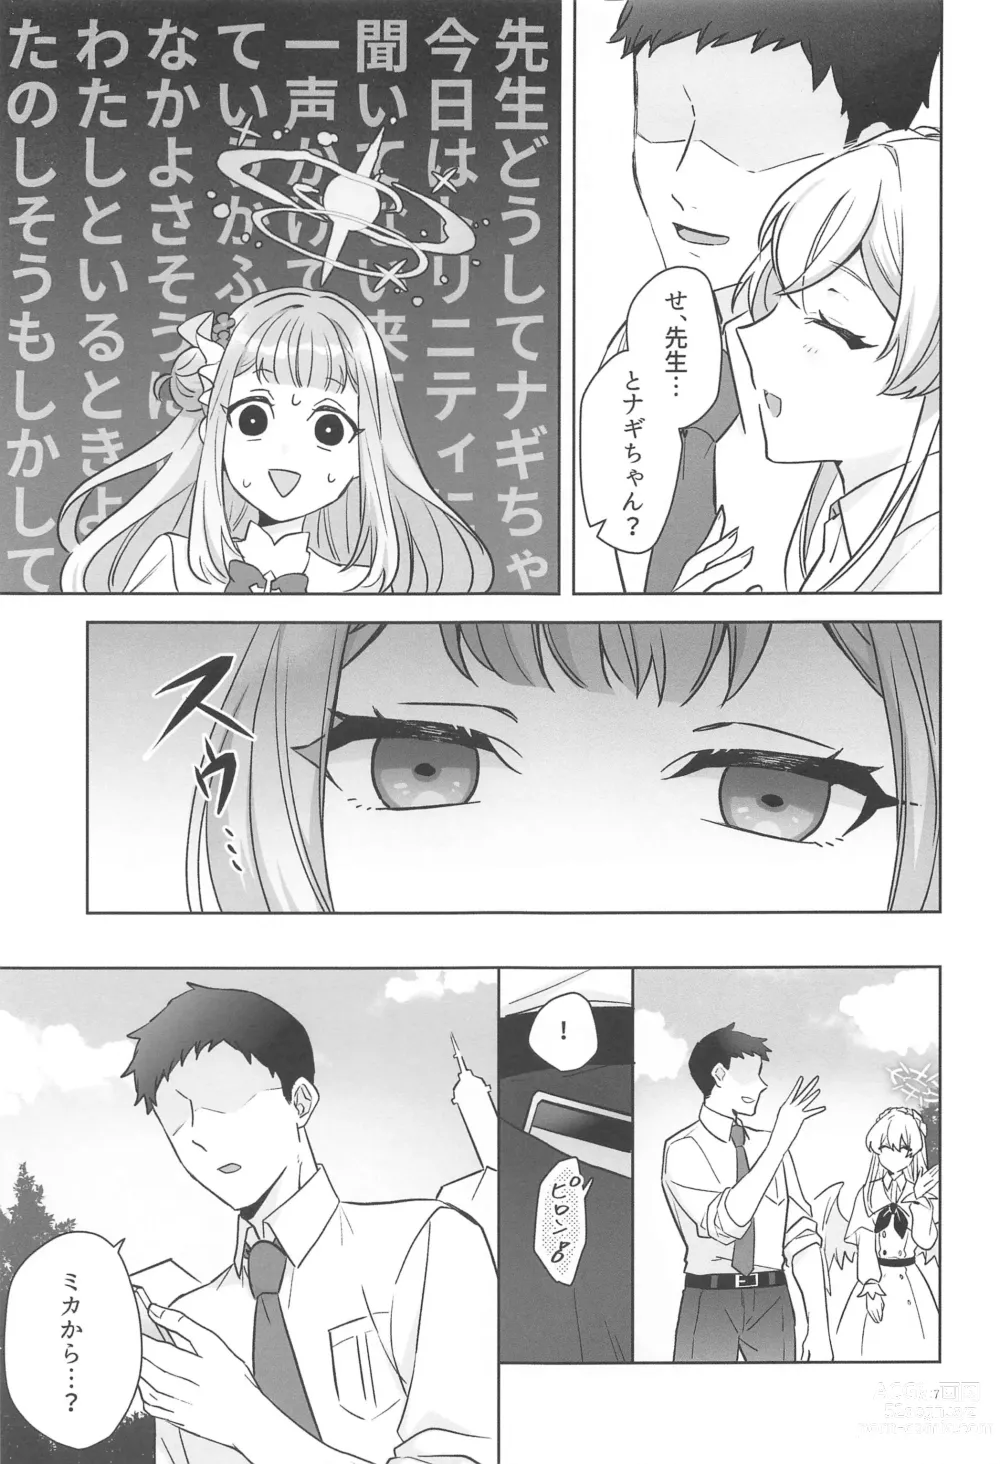 Page 6 of doujinshi Misino Mika  wa Dokusen Shitai